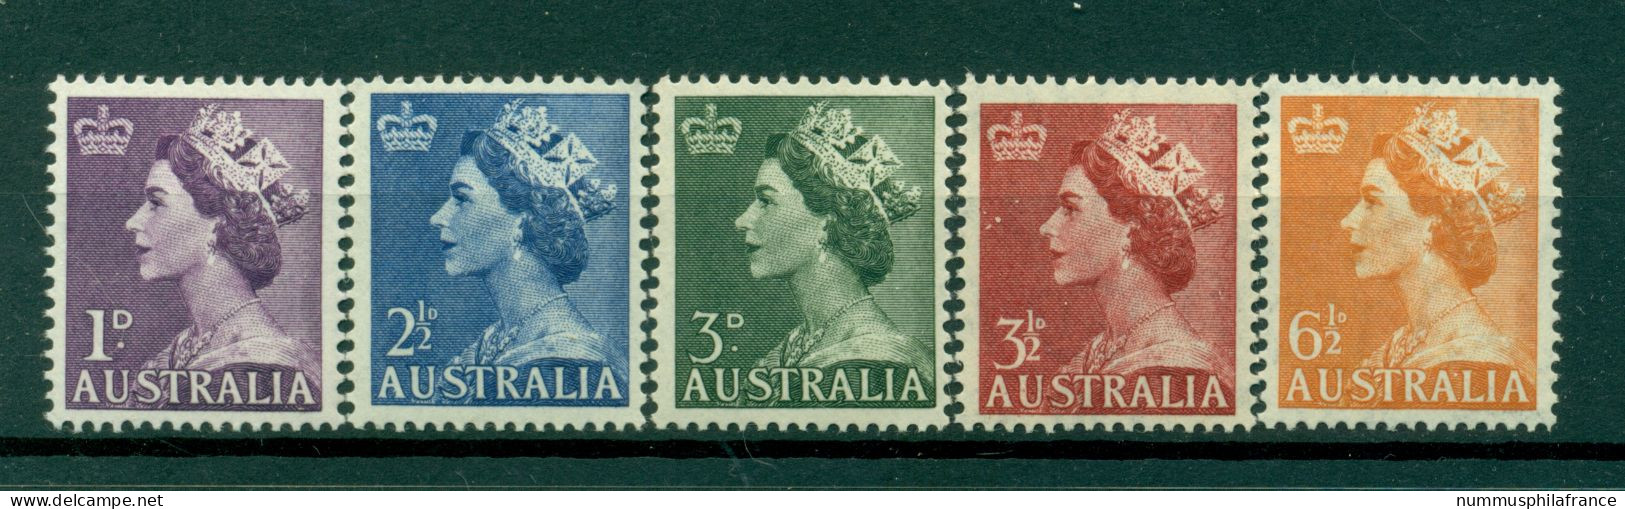 Australie 1953 - Y & T N. 196/98A - Série Courante (Michel N. 229/30-234/36) - Ungebraucht